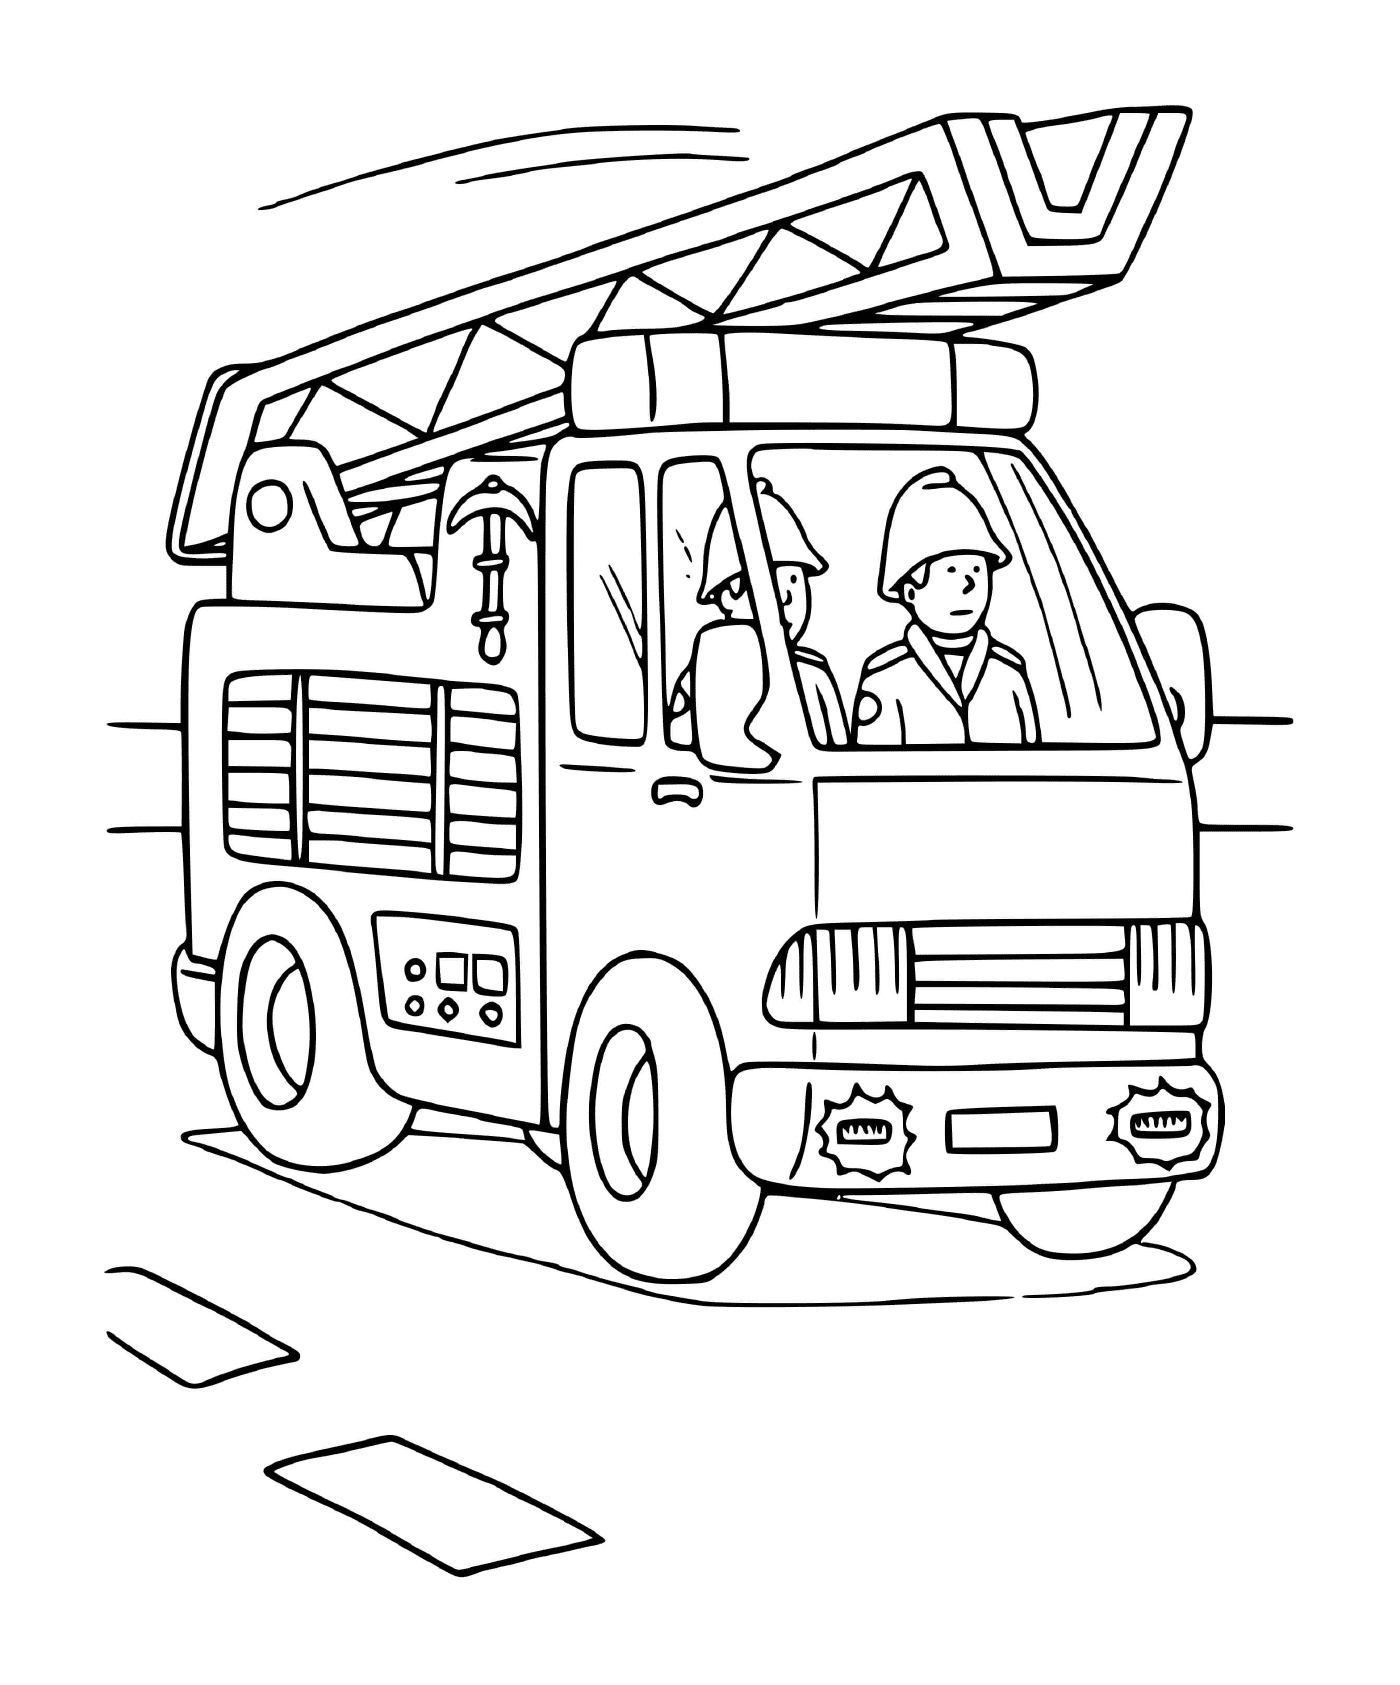  Fire truck 